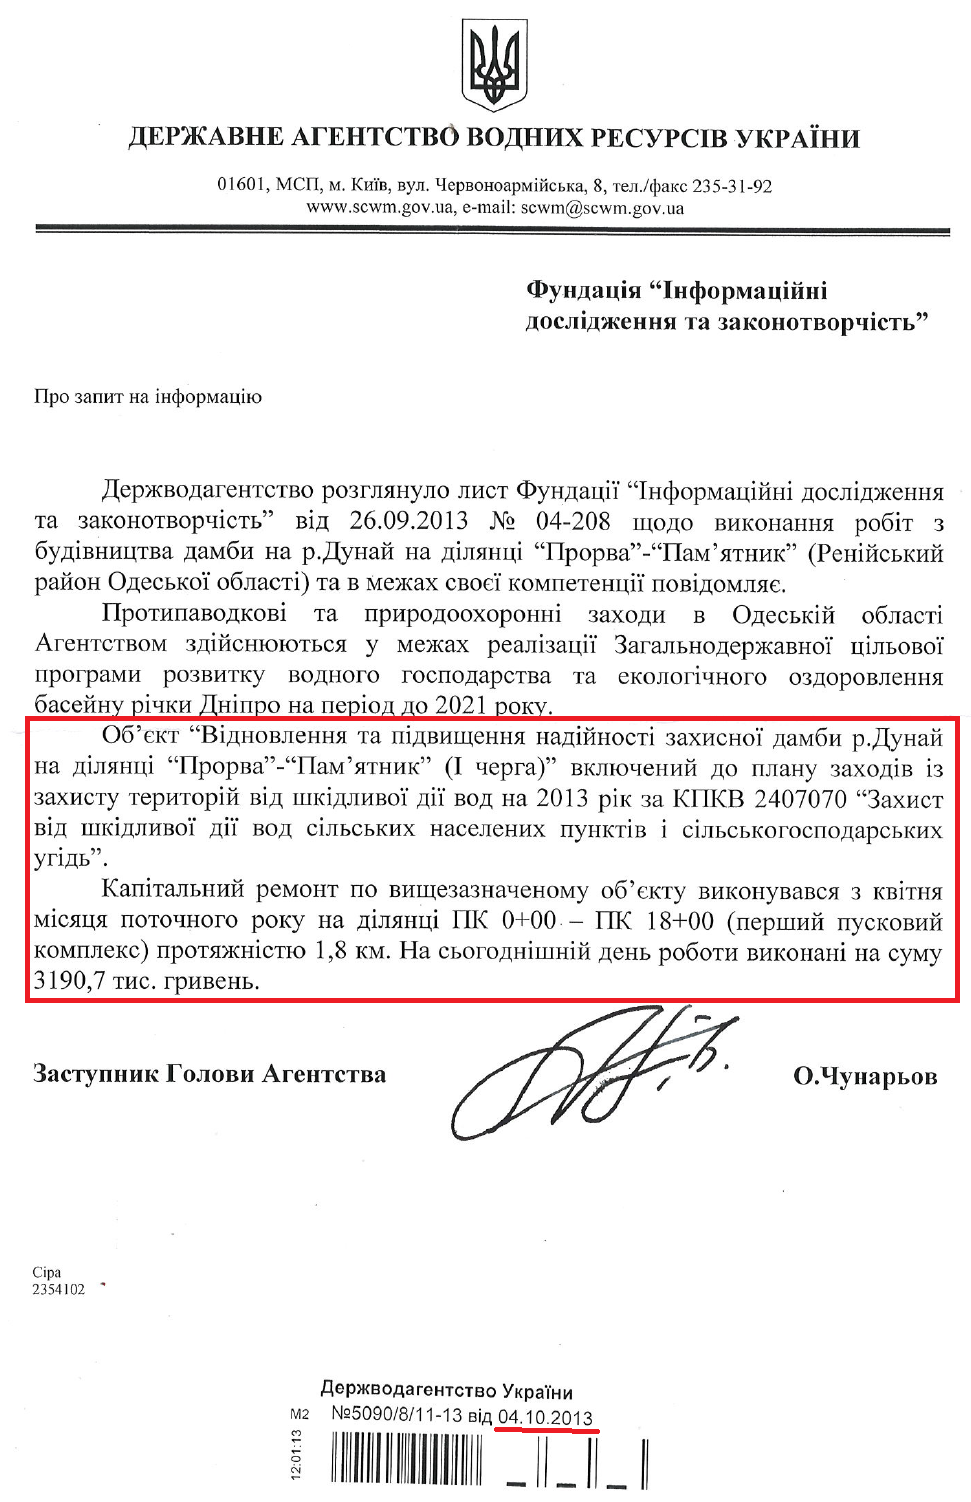 Лист Заступника Голови Державного агентства водних ресурсів України О.Чунарьова від 4 жовтня 2013 року